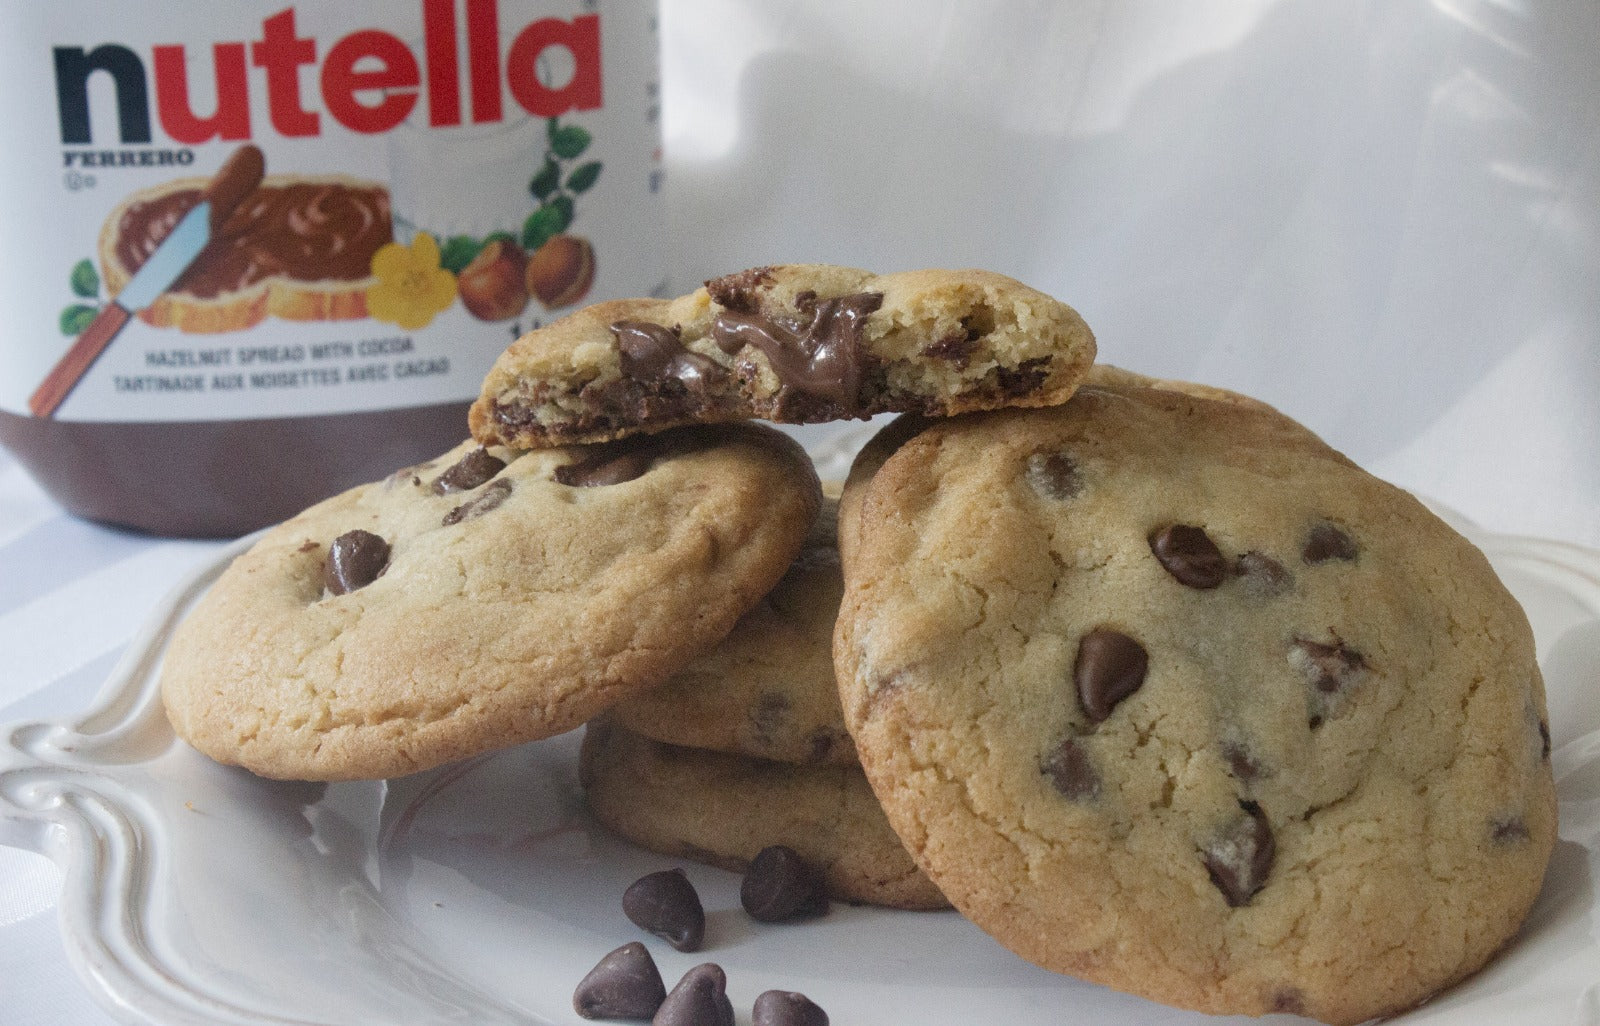 Vancouver Best Cookies - Special Gourmet Nutella Cookies - Nutella Stuffed Cookie